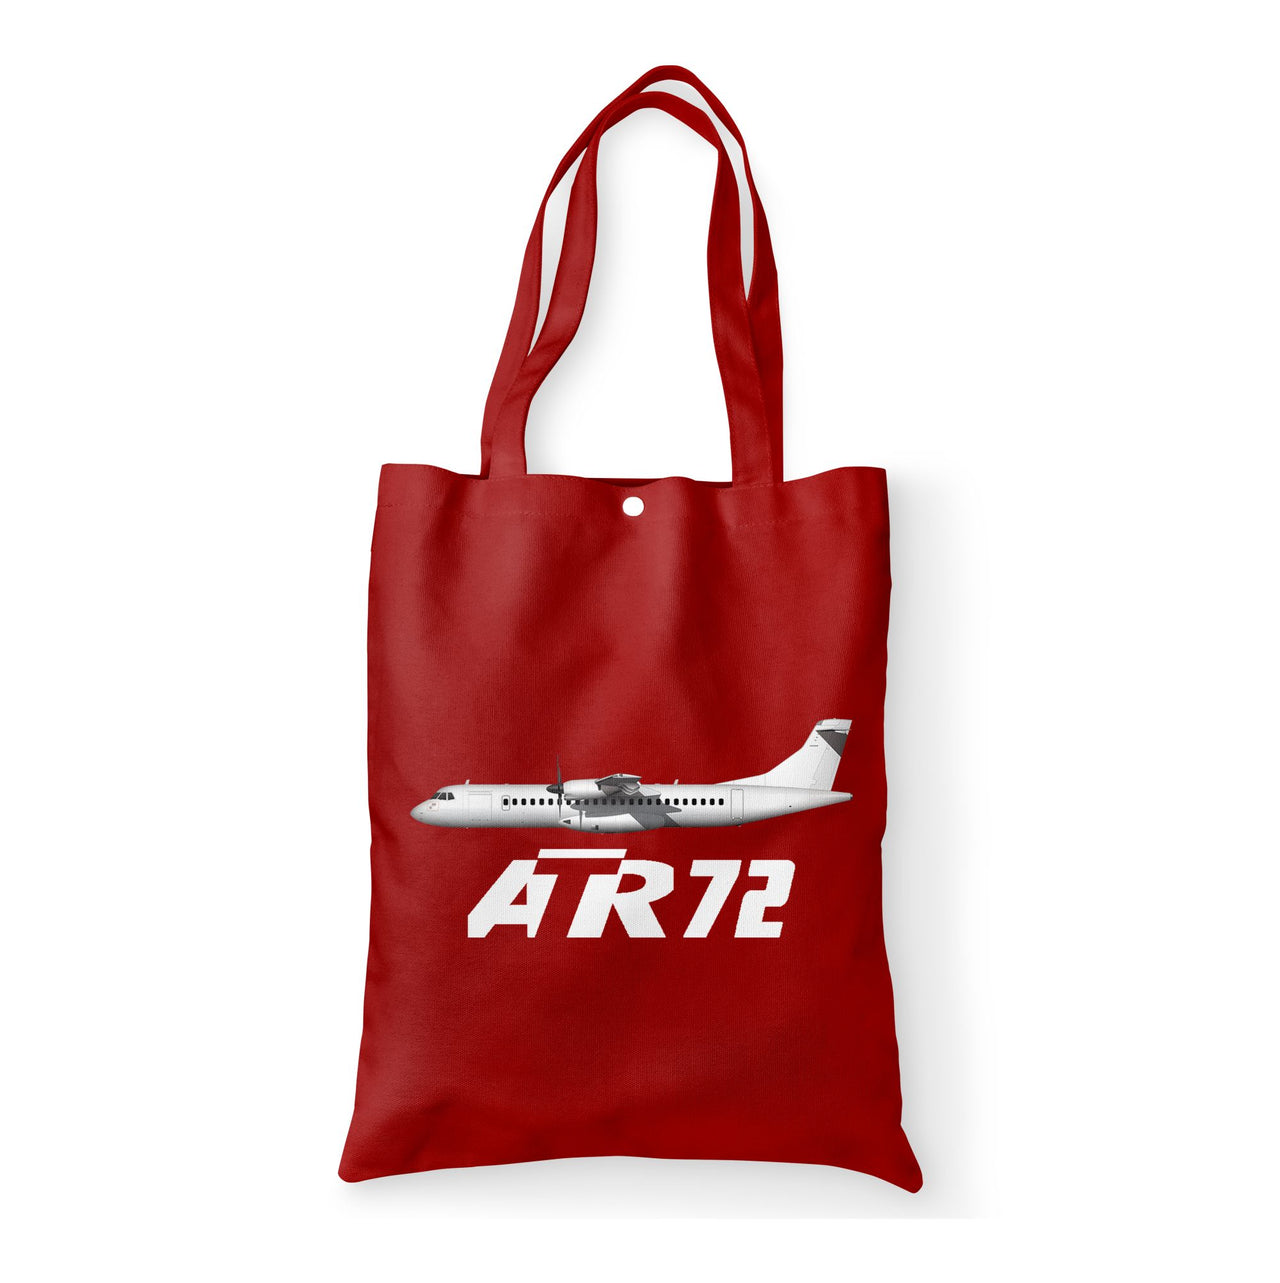 The ATR72 Designed Tote Bags